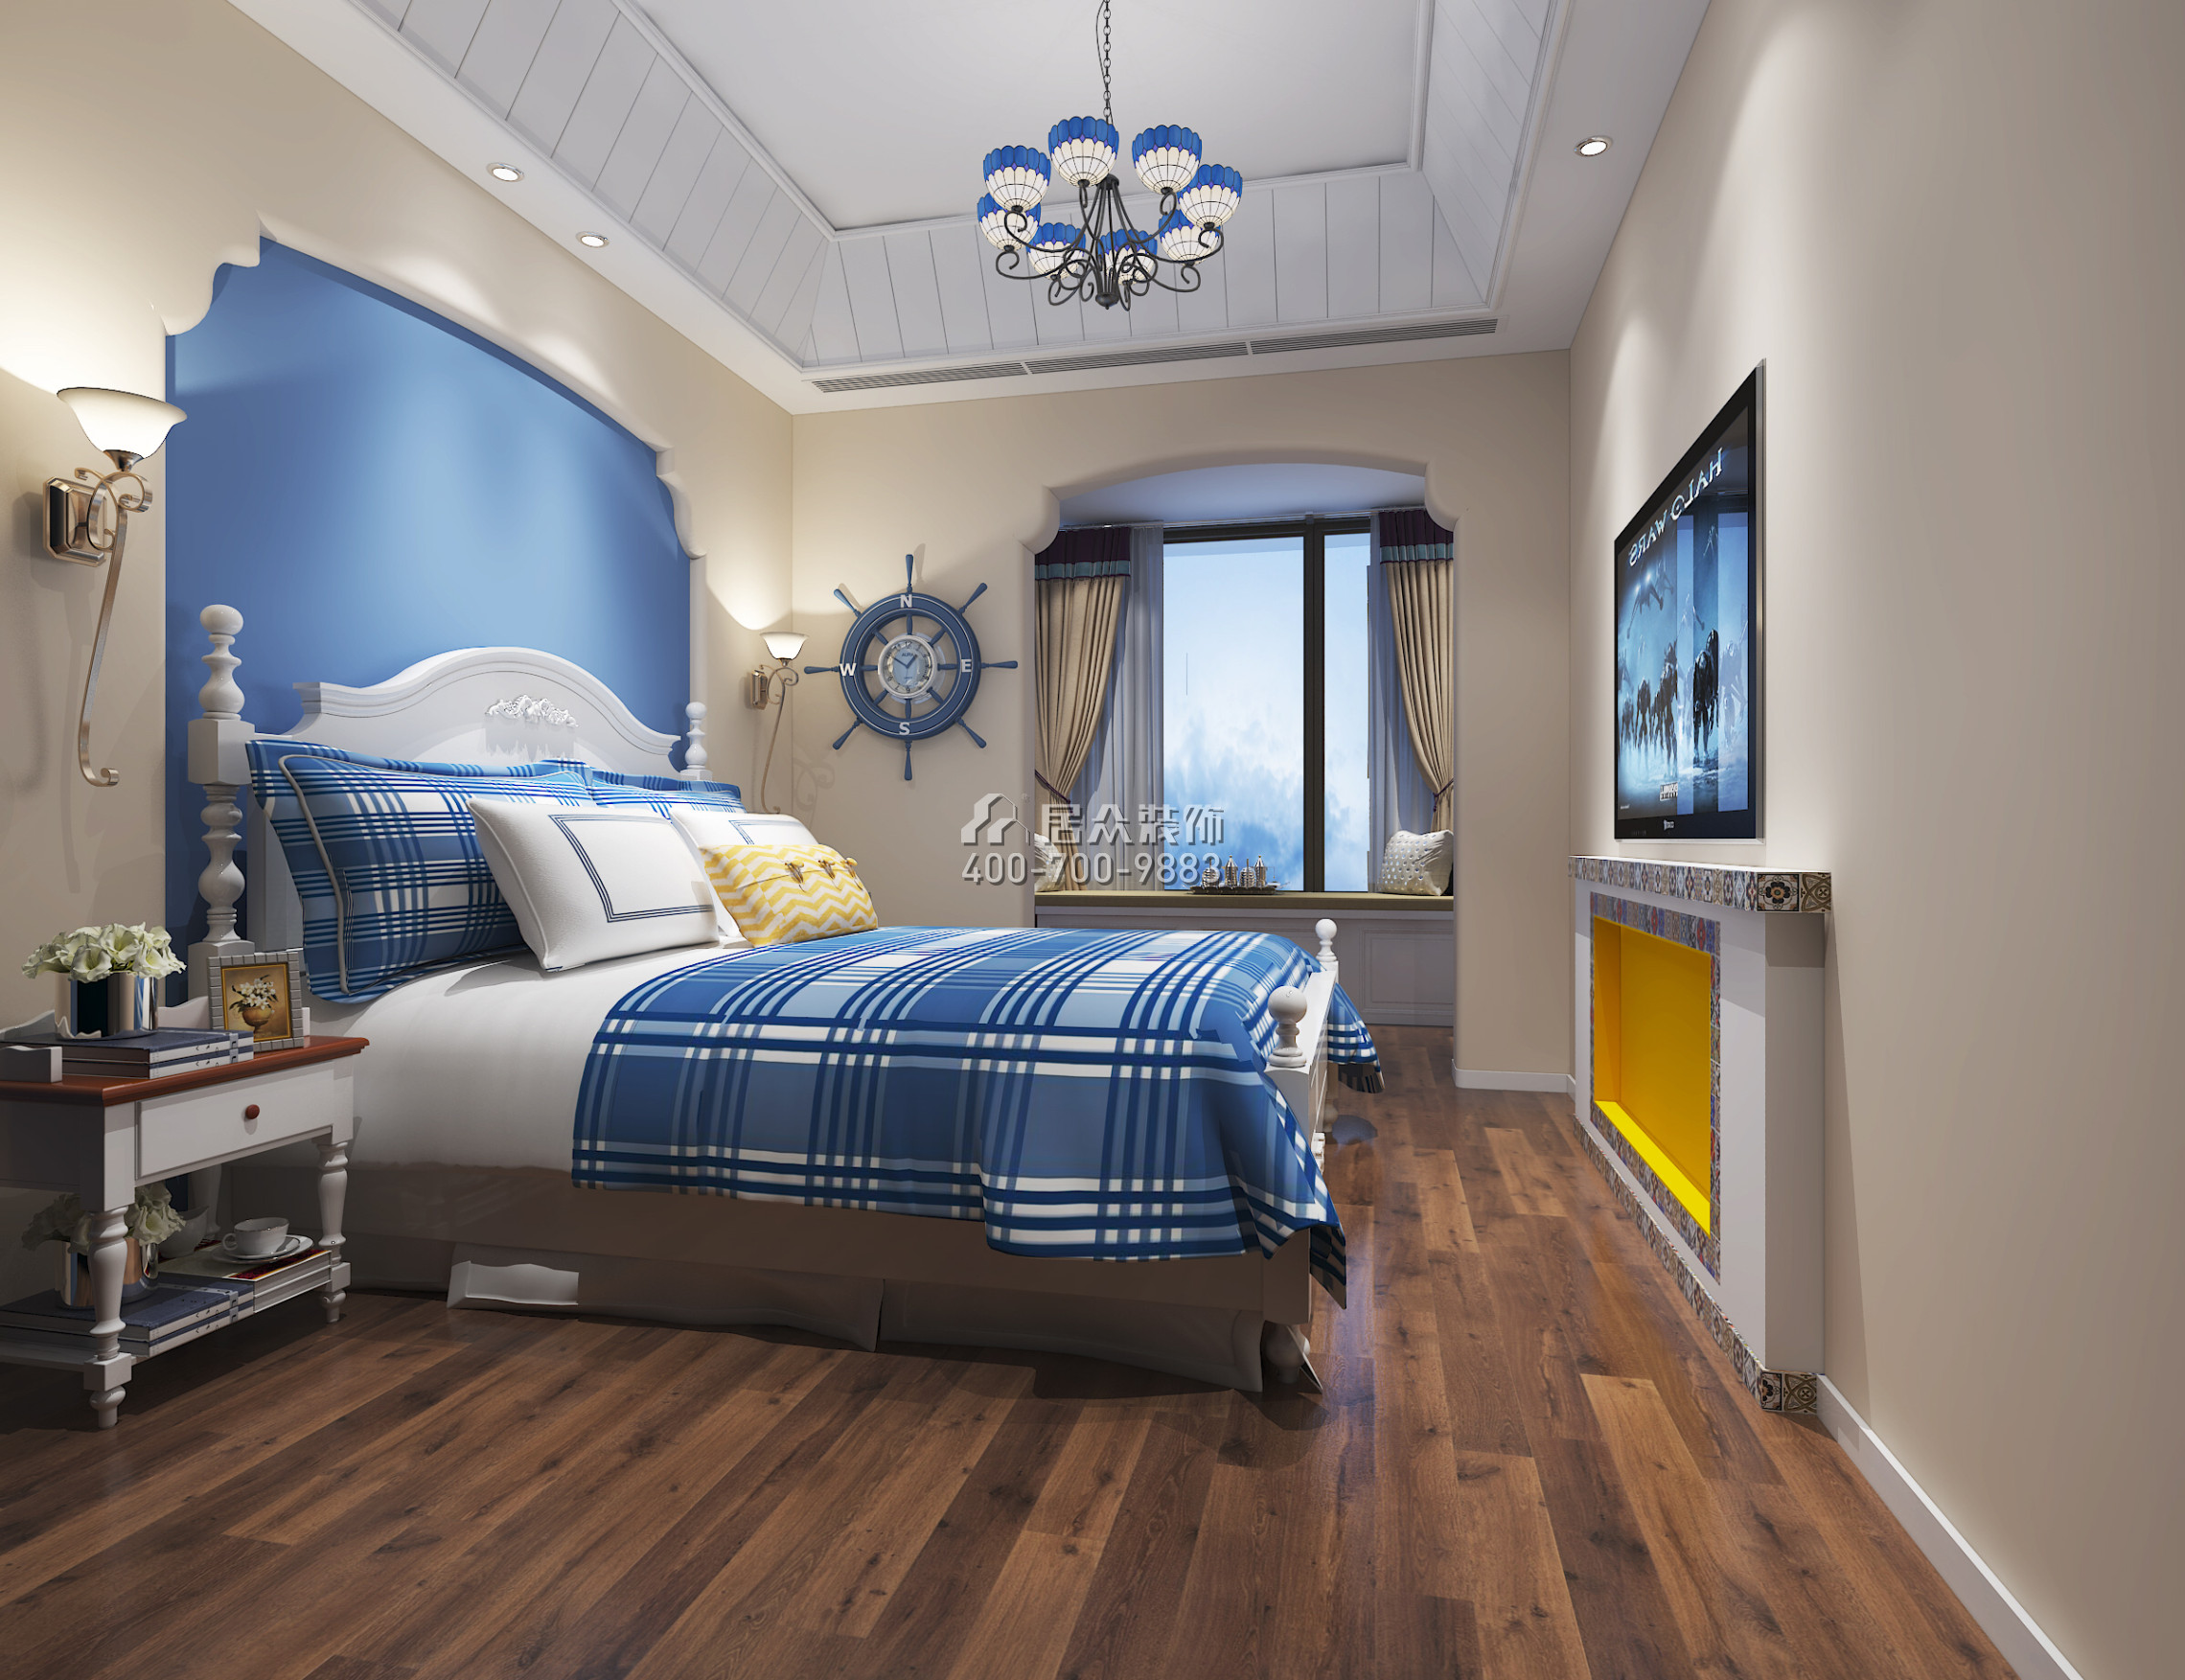 田厦翡翠明珠花园110平方米地中海风格平层户型卧室装修效果图